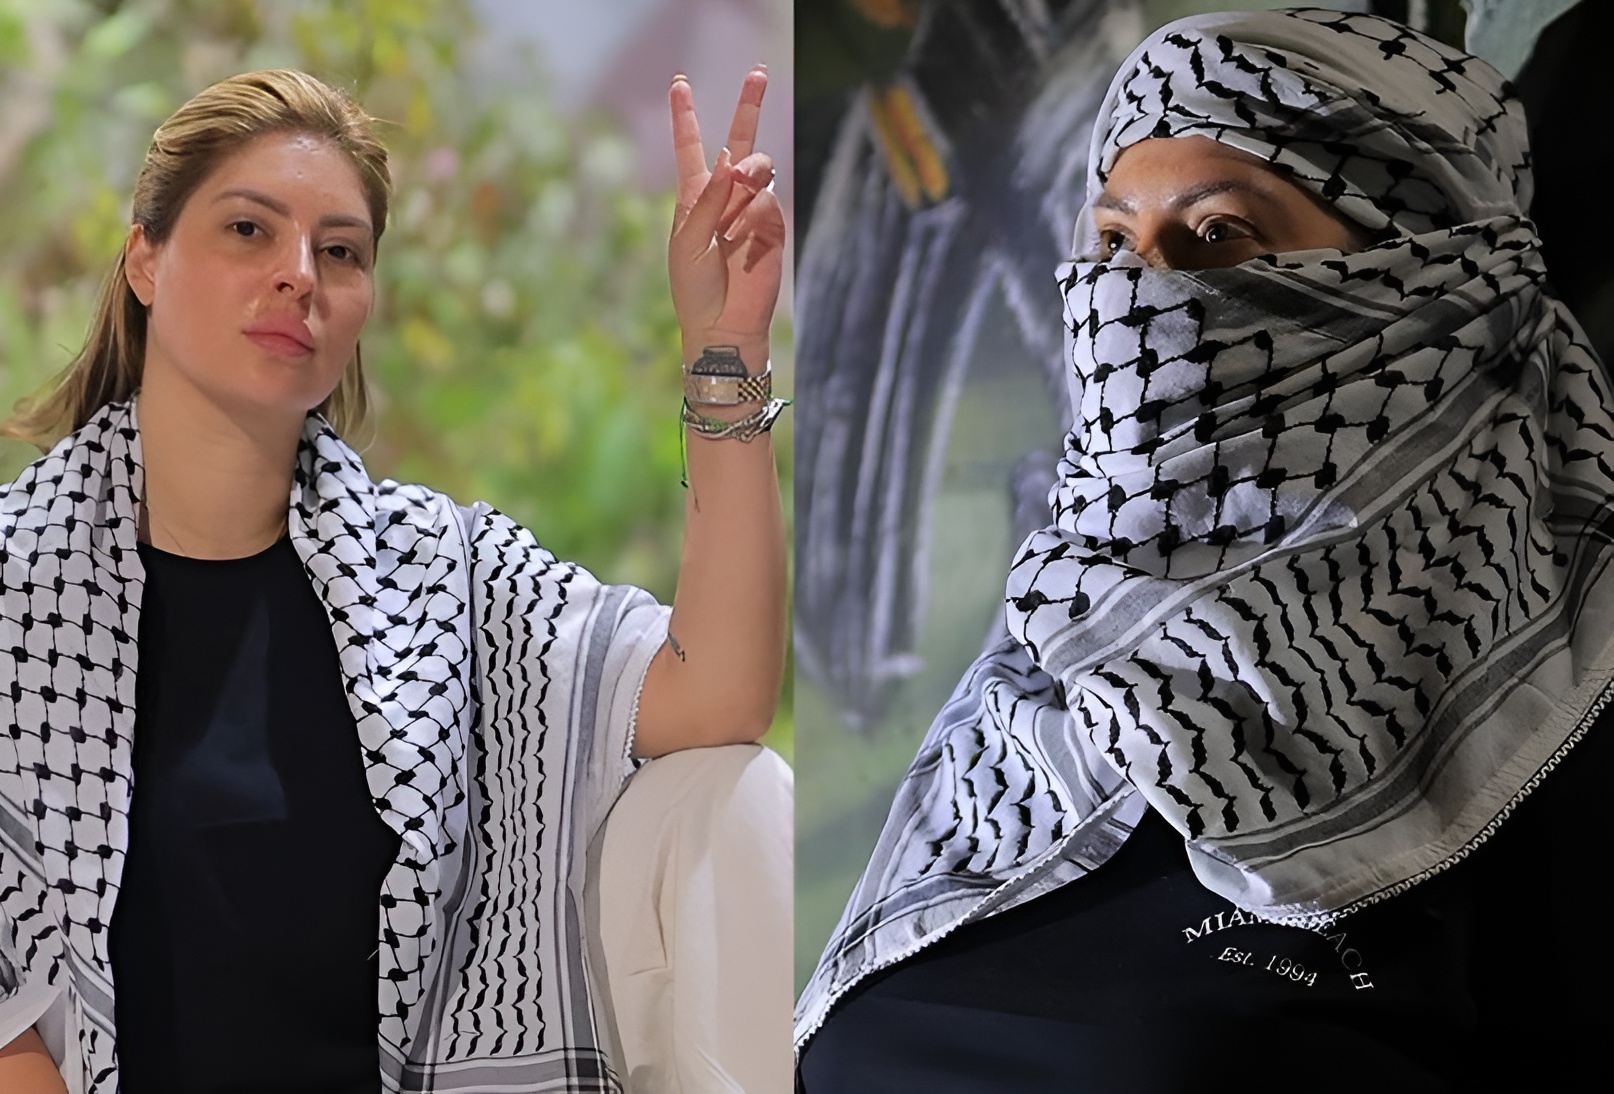 مريم الدباغ ترتدي الكوفية الفلسطينية وتعلنها "أصبحت أماً هناك"! (فيديو)